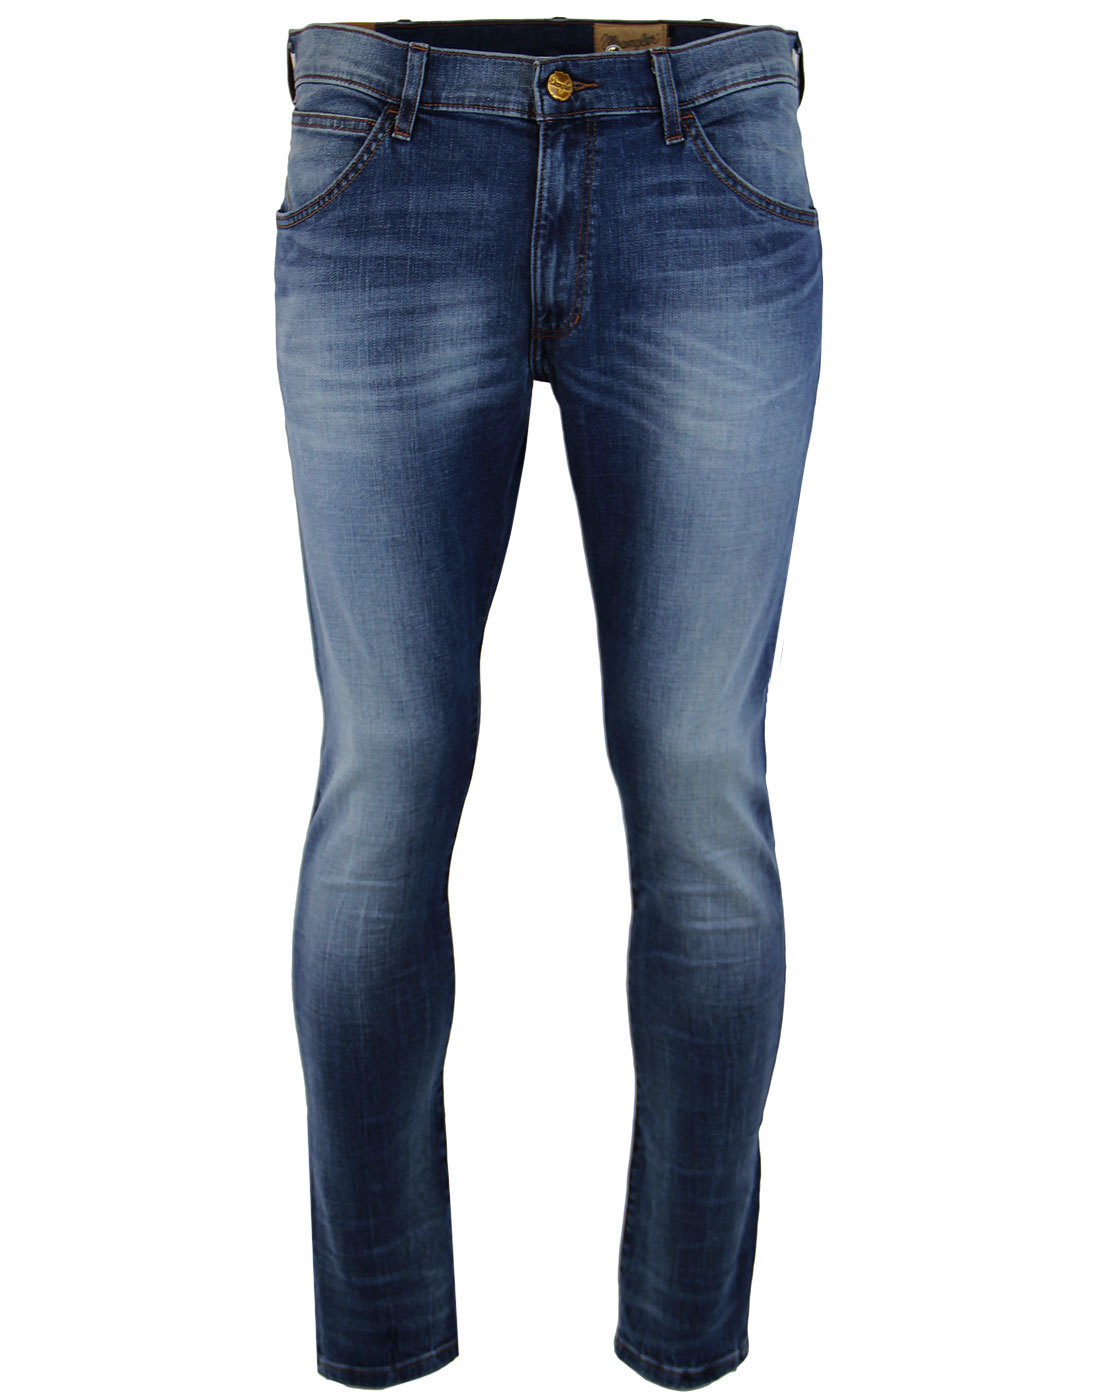 Bryson WRANGLER Indie Skinny Low Waist Denim Jeans